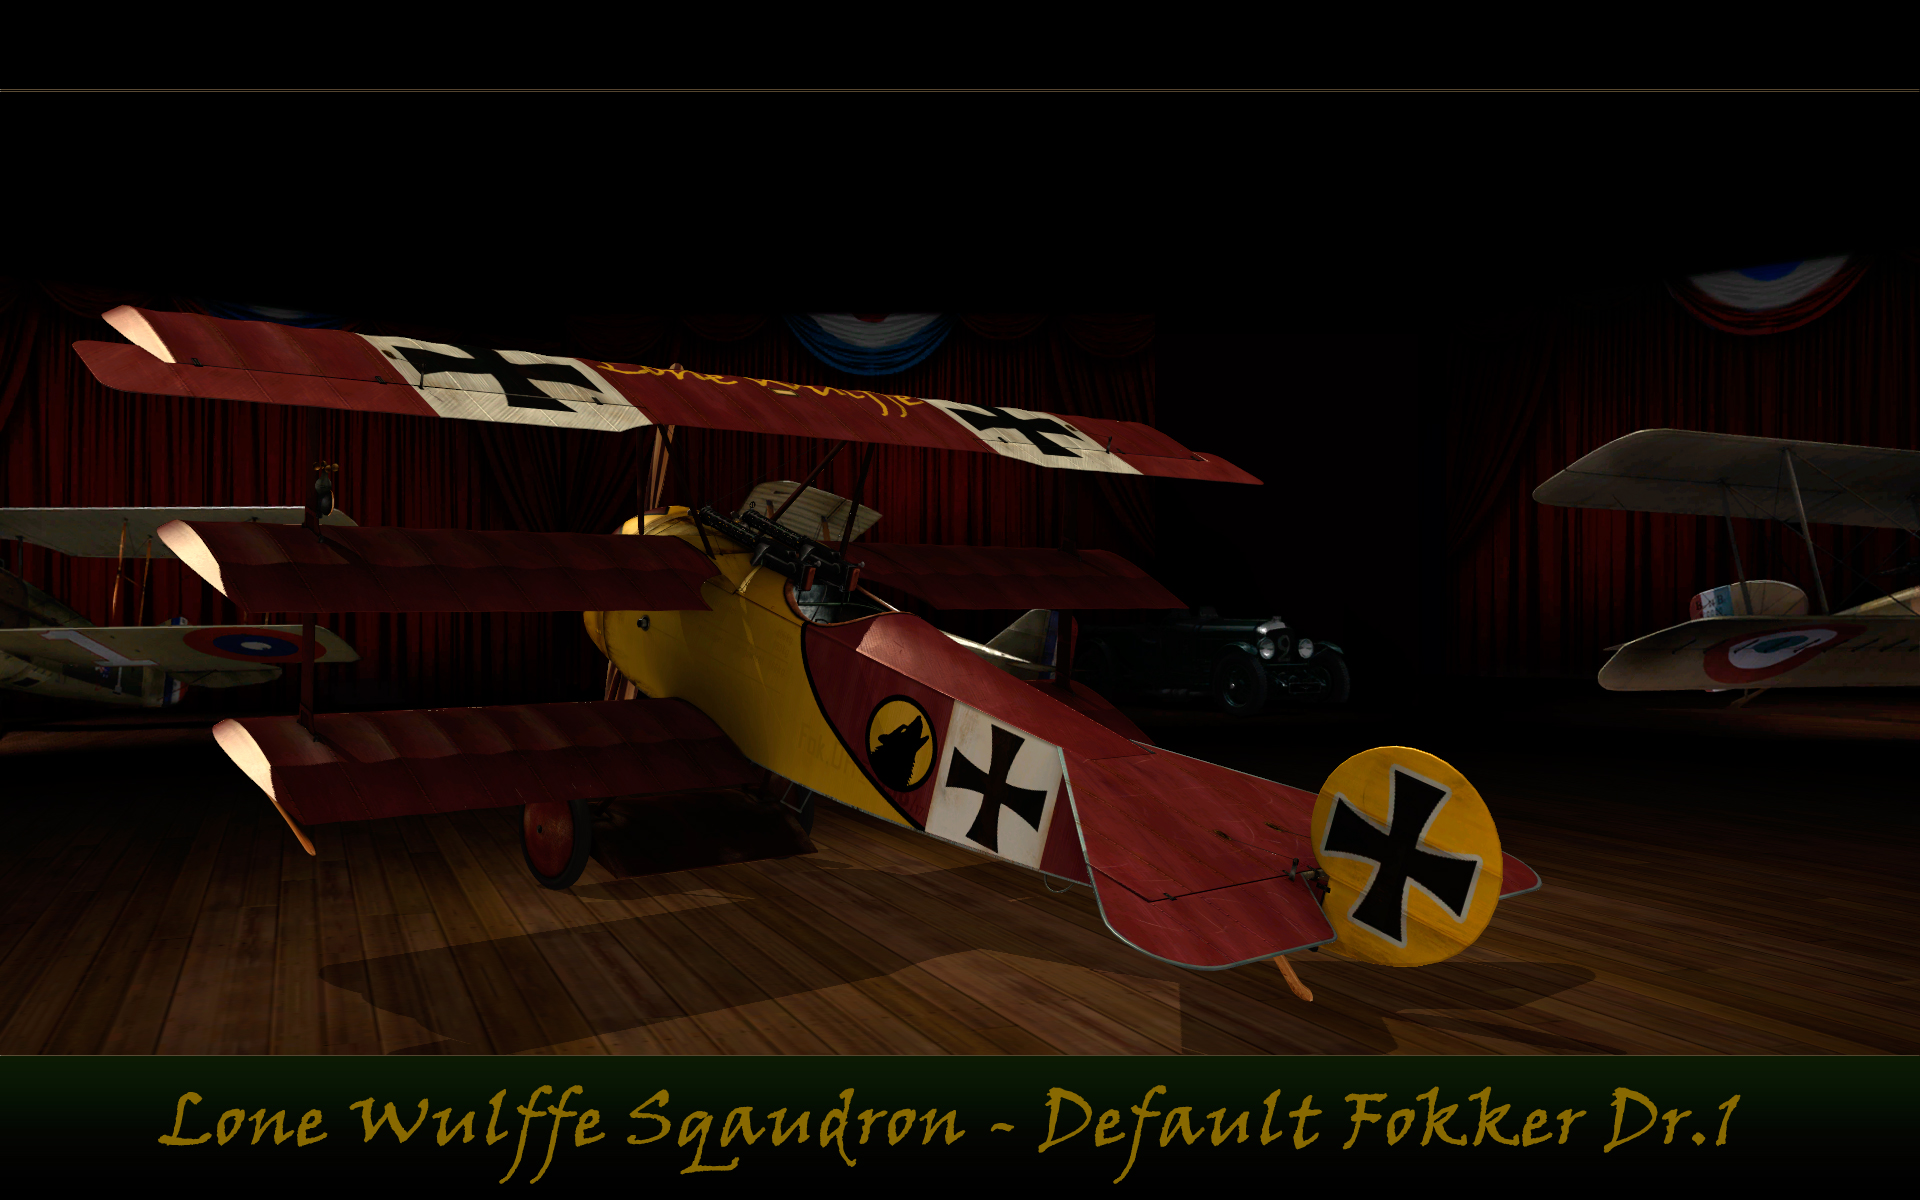 Lone Wulffe Default Fokker Dr.1 - Hangar